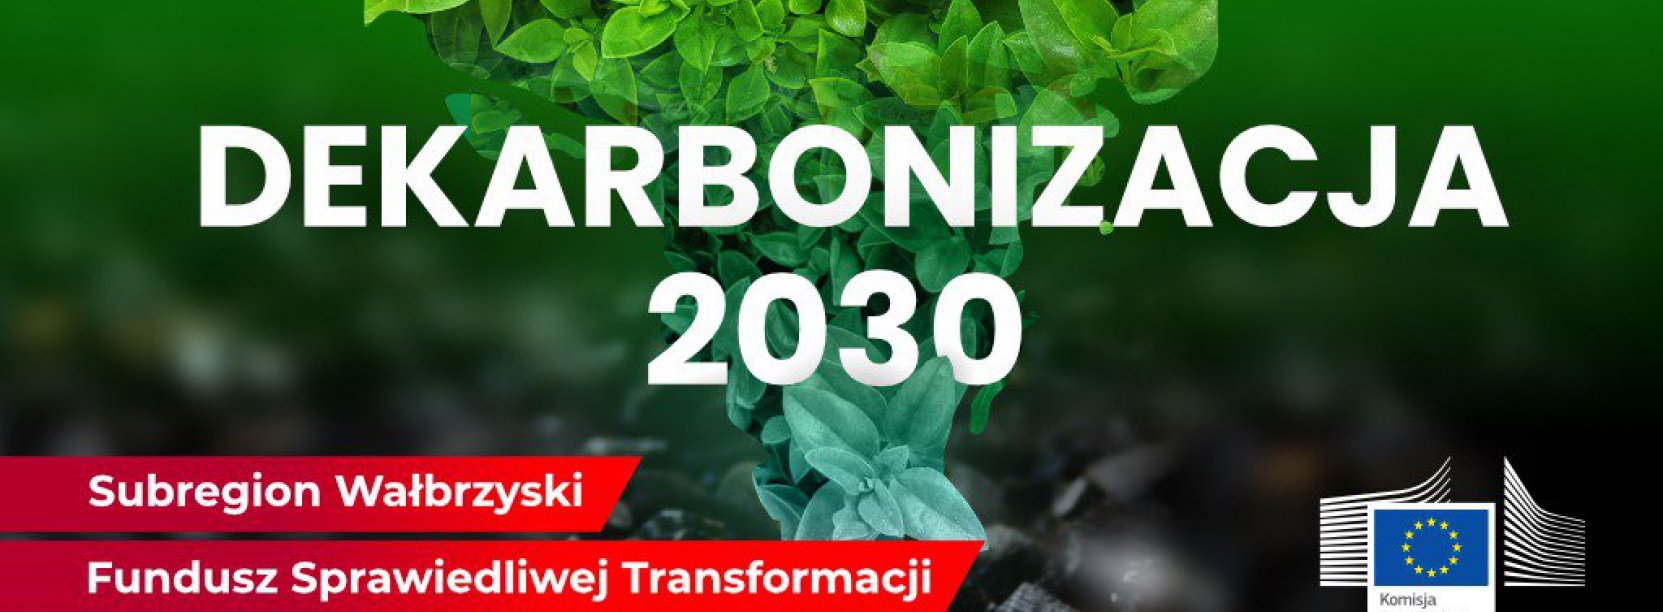 Napis dekarbonizacja, na tle zieleni i węgla